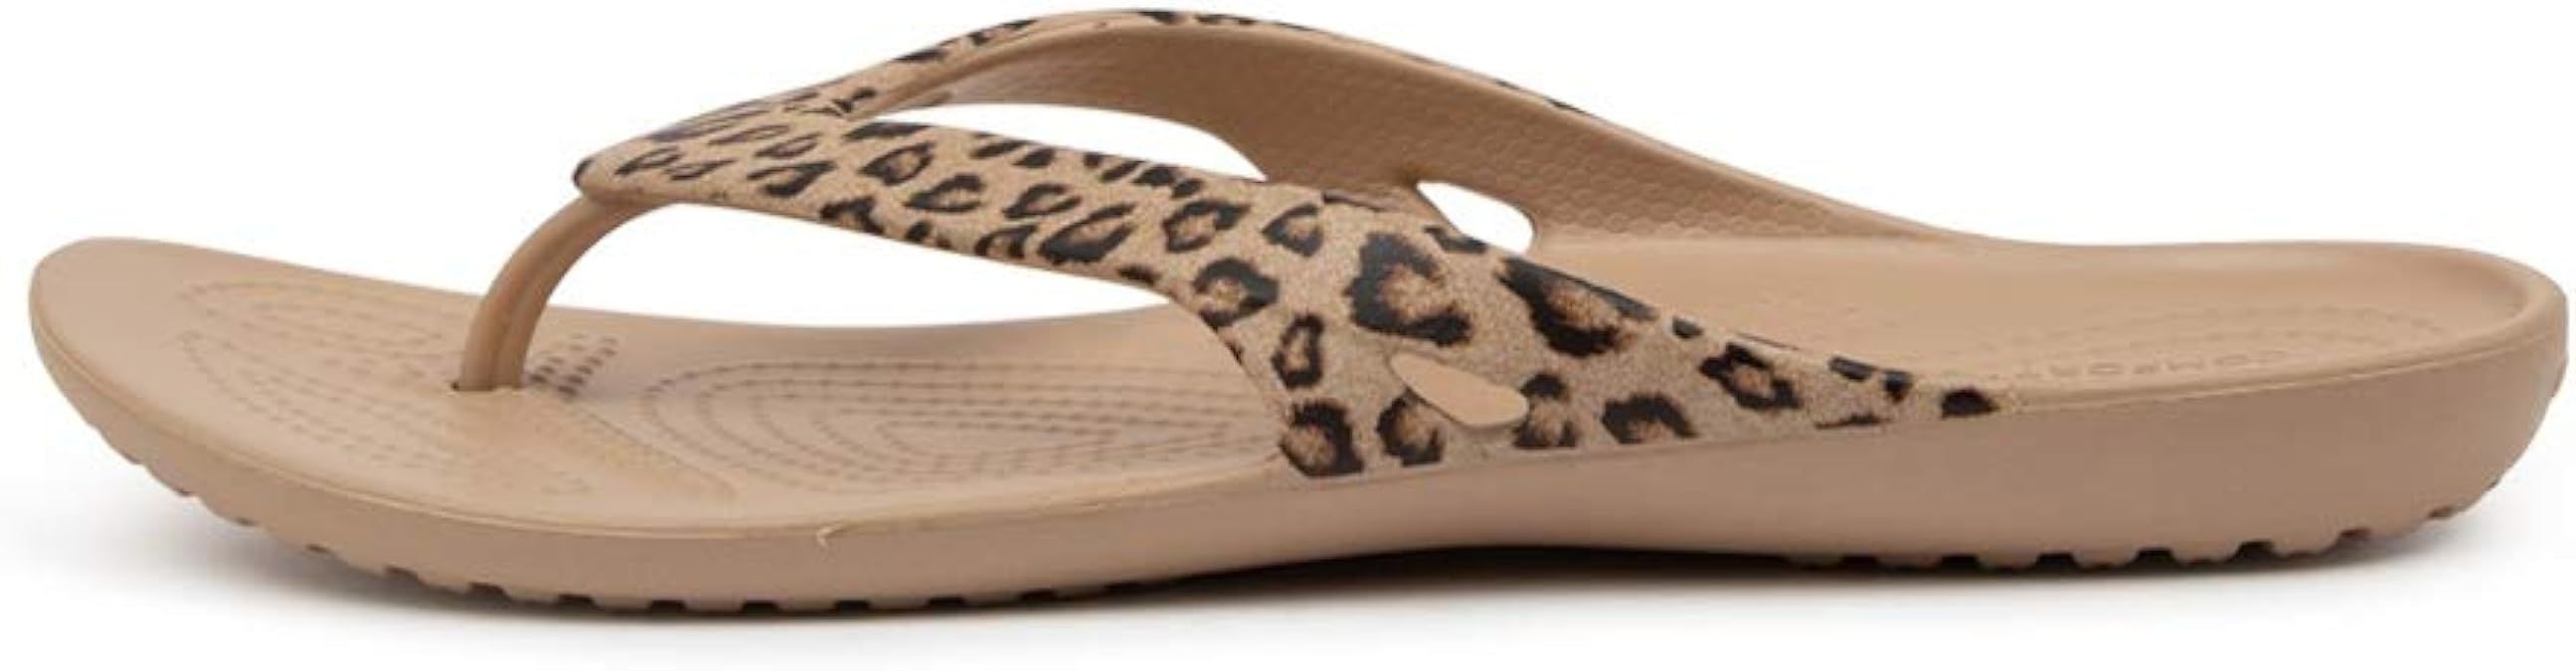 Crocs Women's Kadee Ii Graphic Flip Flops | Sandals | Amazon (US)